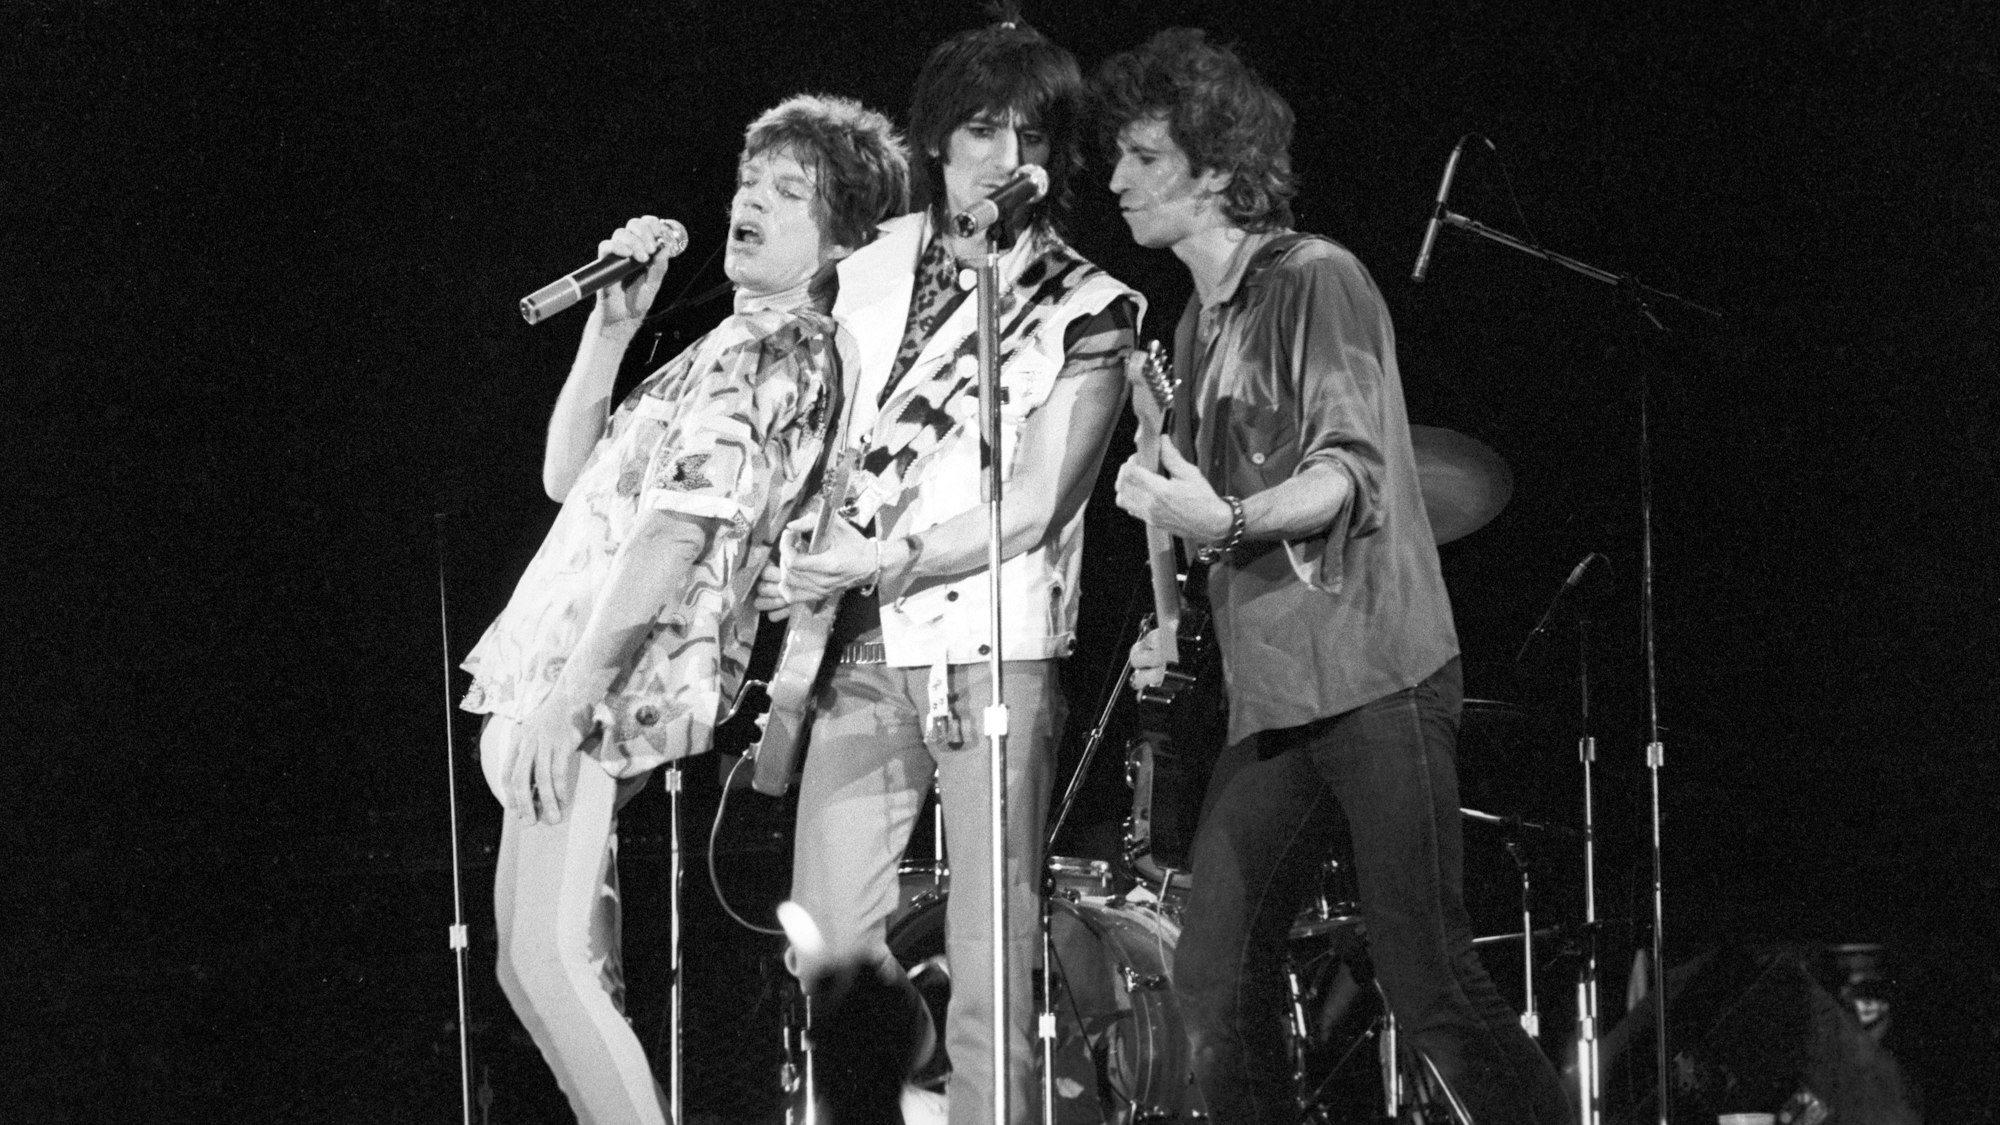 ARCHIV - 29.06.1982, Hessen, Frankfurt: Mick Jagger (l-r), Ron Wood und Keith Richards während des Konzertes der Rolling Stones in der Festhalle. Mick Jagger, Frontman der Rolling Stones, feiert am 26. Juli 2023 seinen 80. Geburtstag. (zu dpa: «Rolling-Stones-Sänger und ewige Rockikone: Mick Jagger wird 80») Foto: Roland Holschneider/dpa +++ dpa-Bildfunk +++